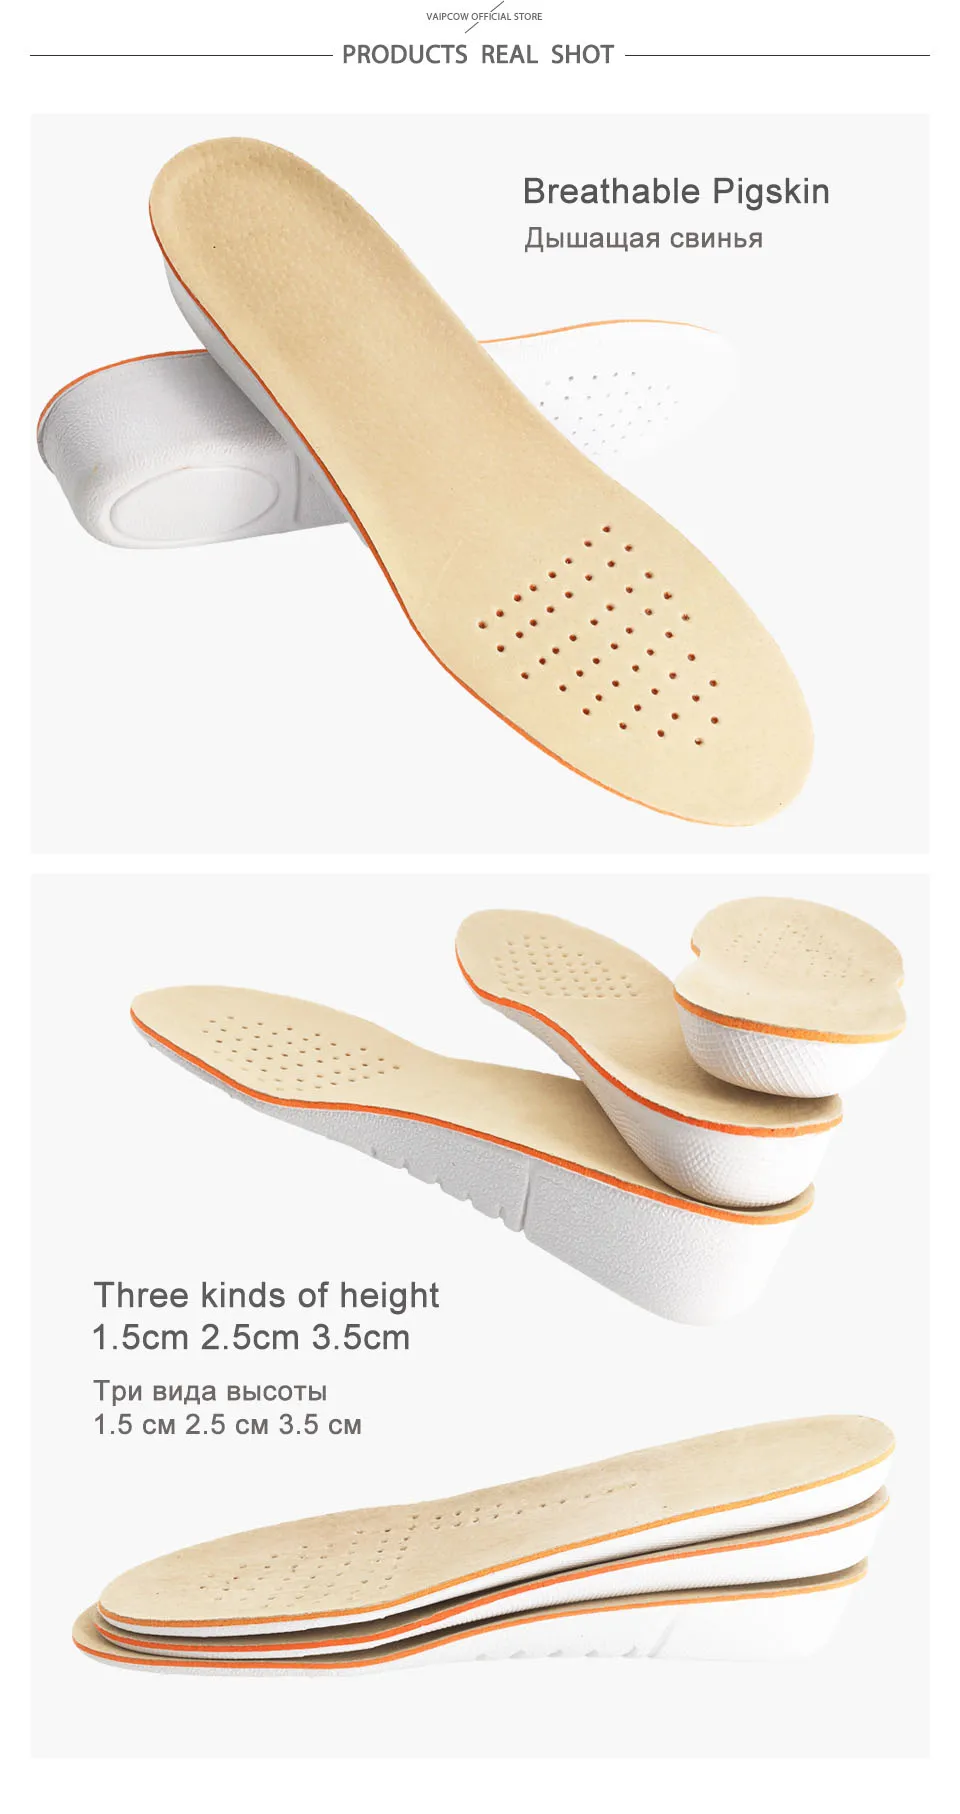 VAIPCOW стелька для увеличения роста 1,5 см-3,5 см амортизирующая обувь увеличение высоты подъема пятки стельки пара выше для Для мужчин/Для